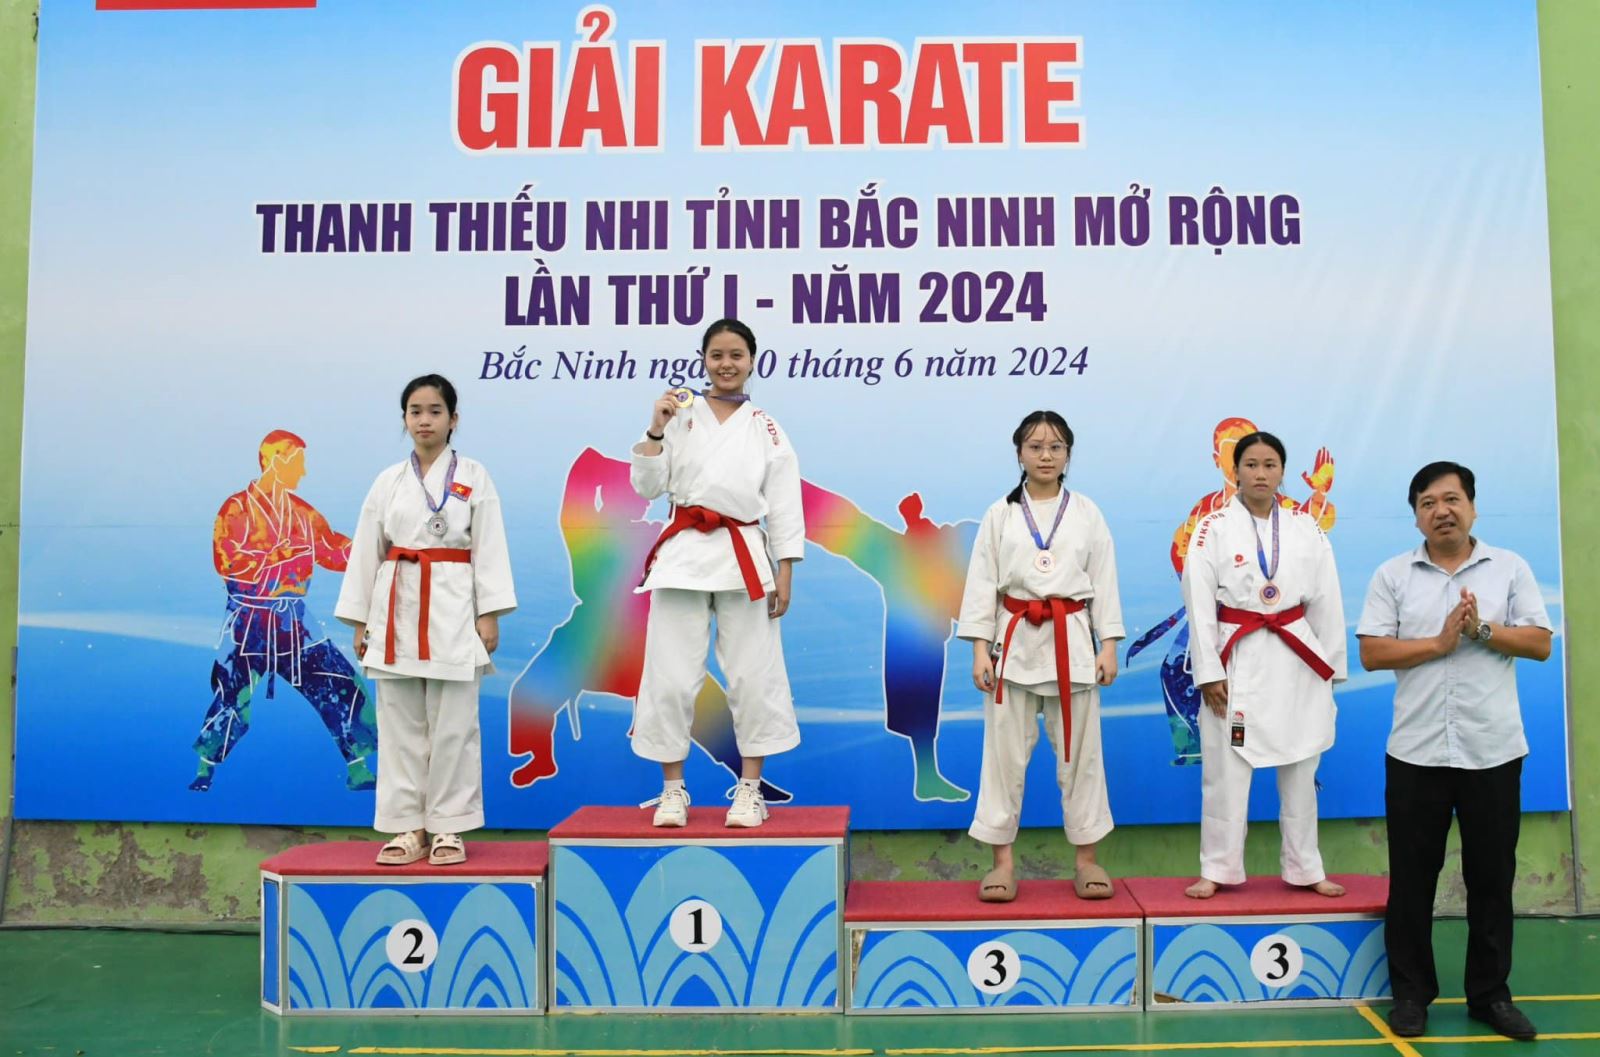 Giải Karate Thanh thiếu nhi tỉnh Bắc Ninh mở rộng lần thứ I - năm 2024